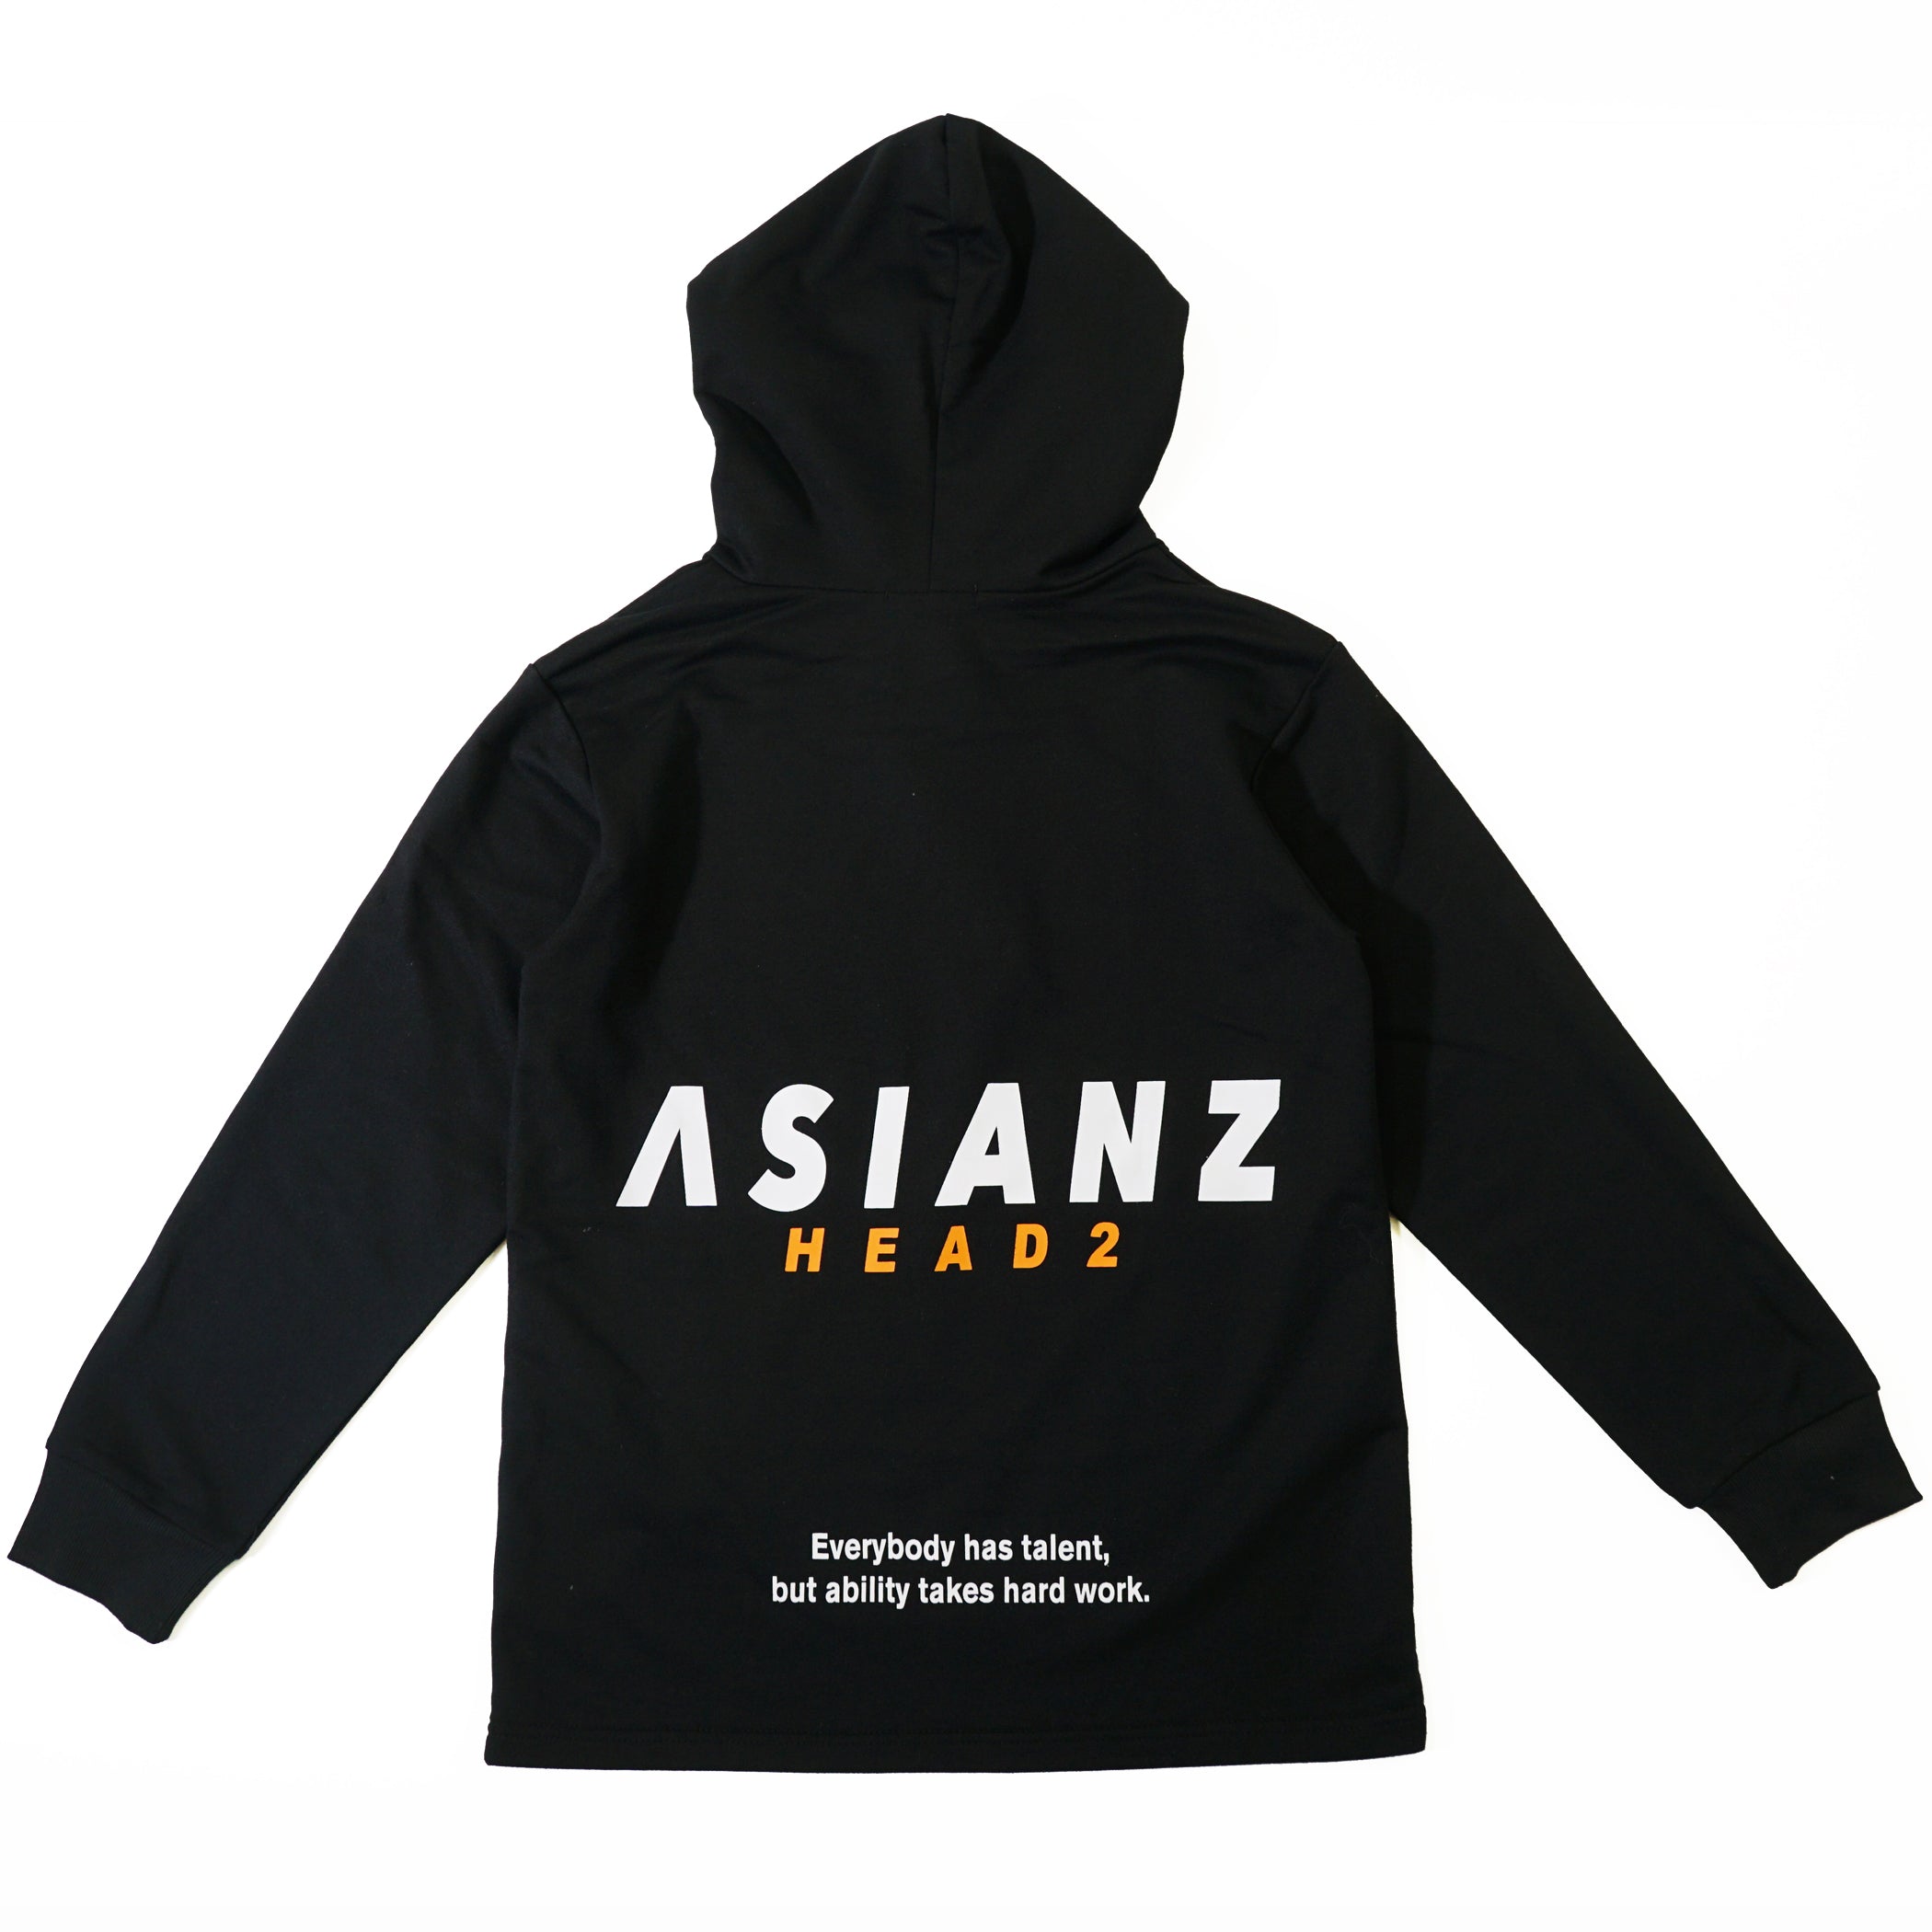 (セール商品) ASIANZ HEAD2 カラーロゴフーディー キッズウェアー